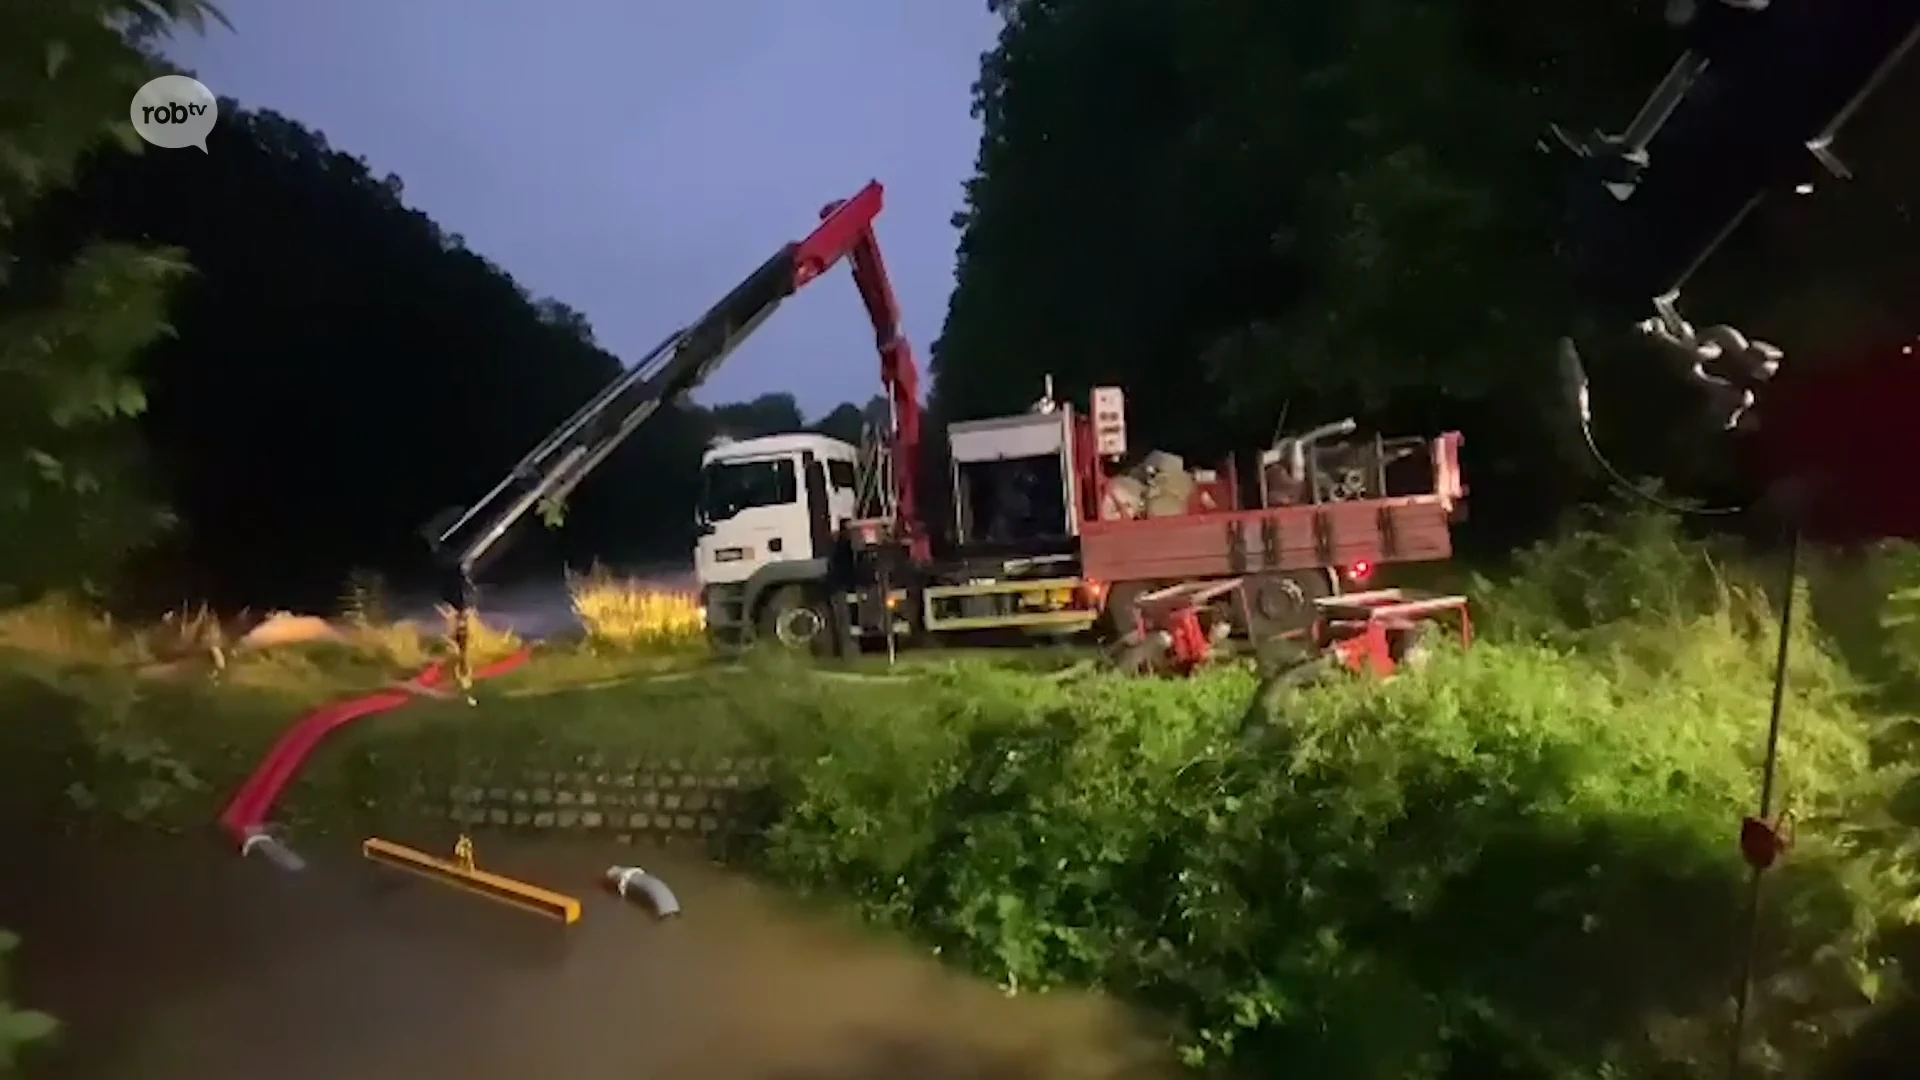 Drukke nacht in Diest: brandweer pompt hele nacht water over nadat beek uit oevers treedt